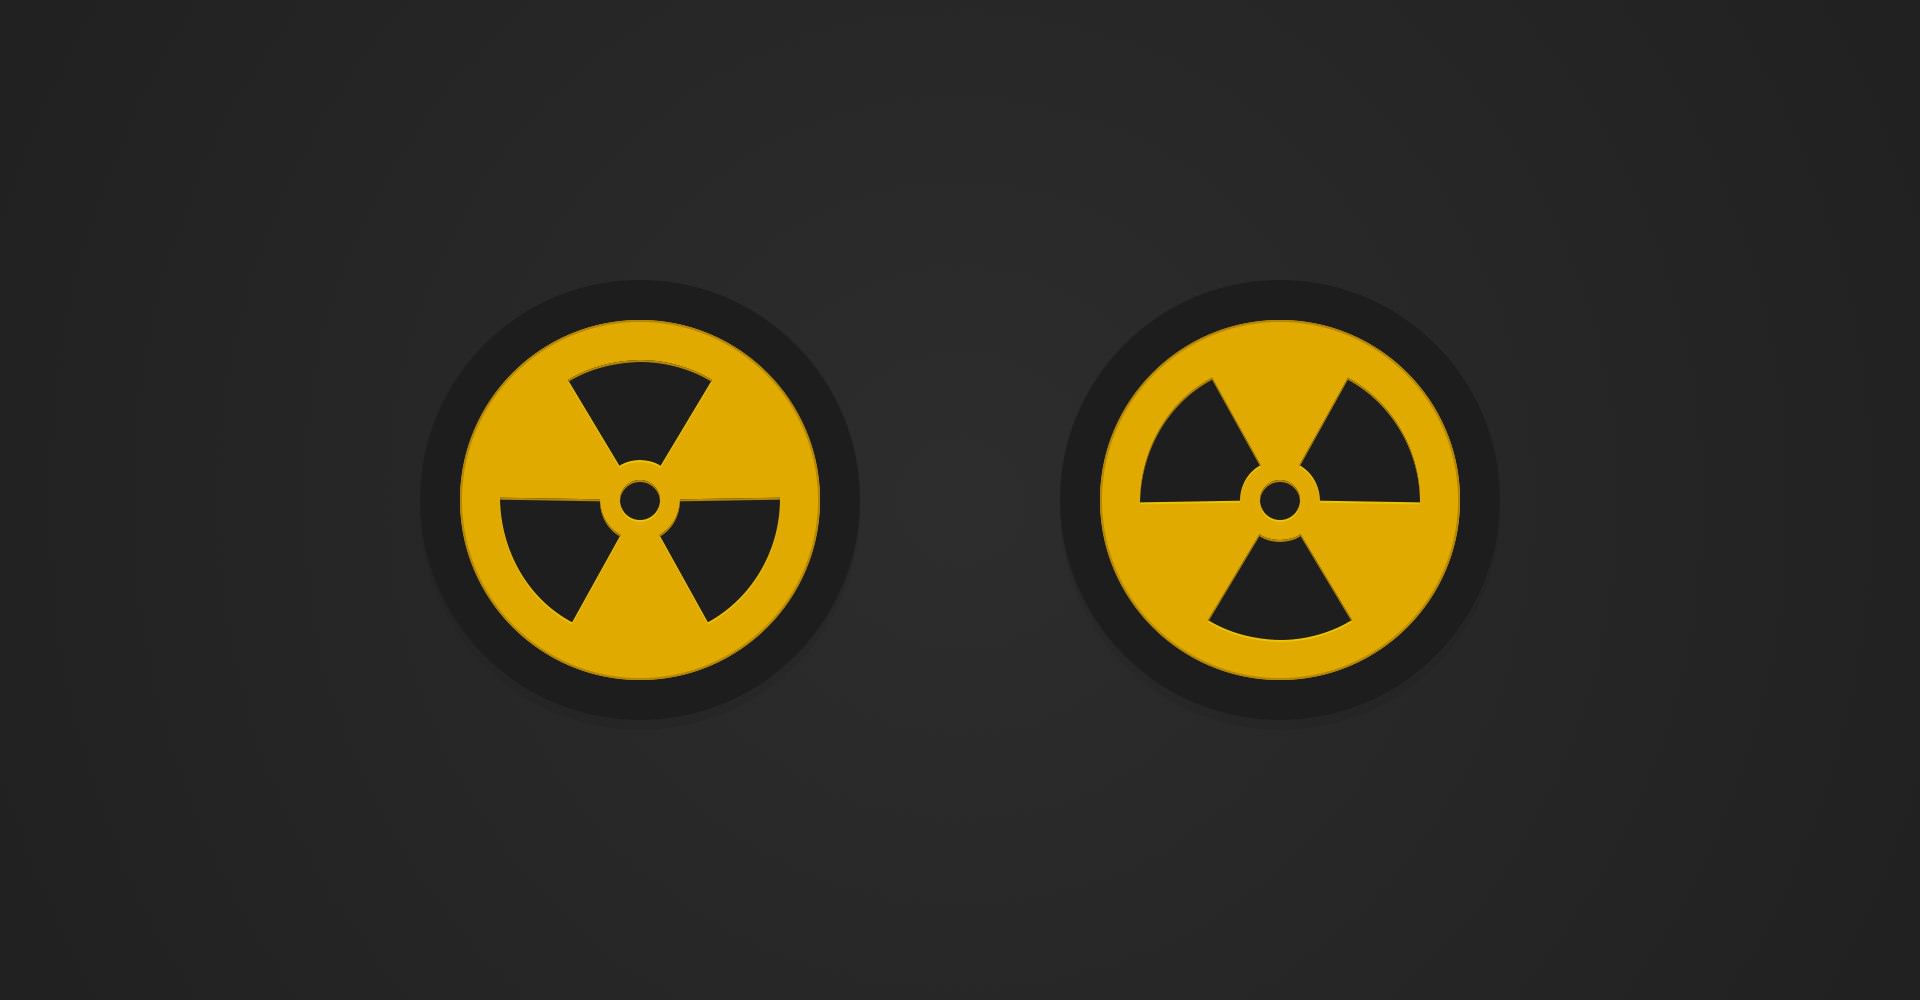 Create a Nuclear Symbol Icon | iDraw Tutorials